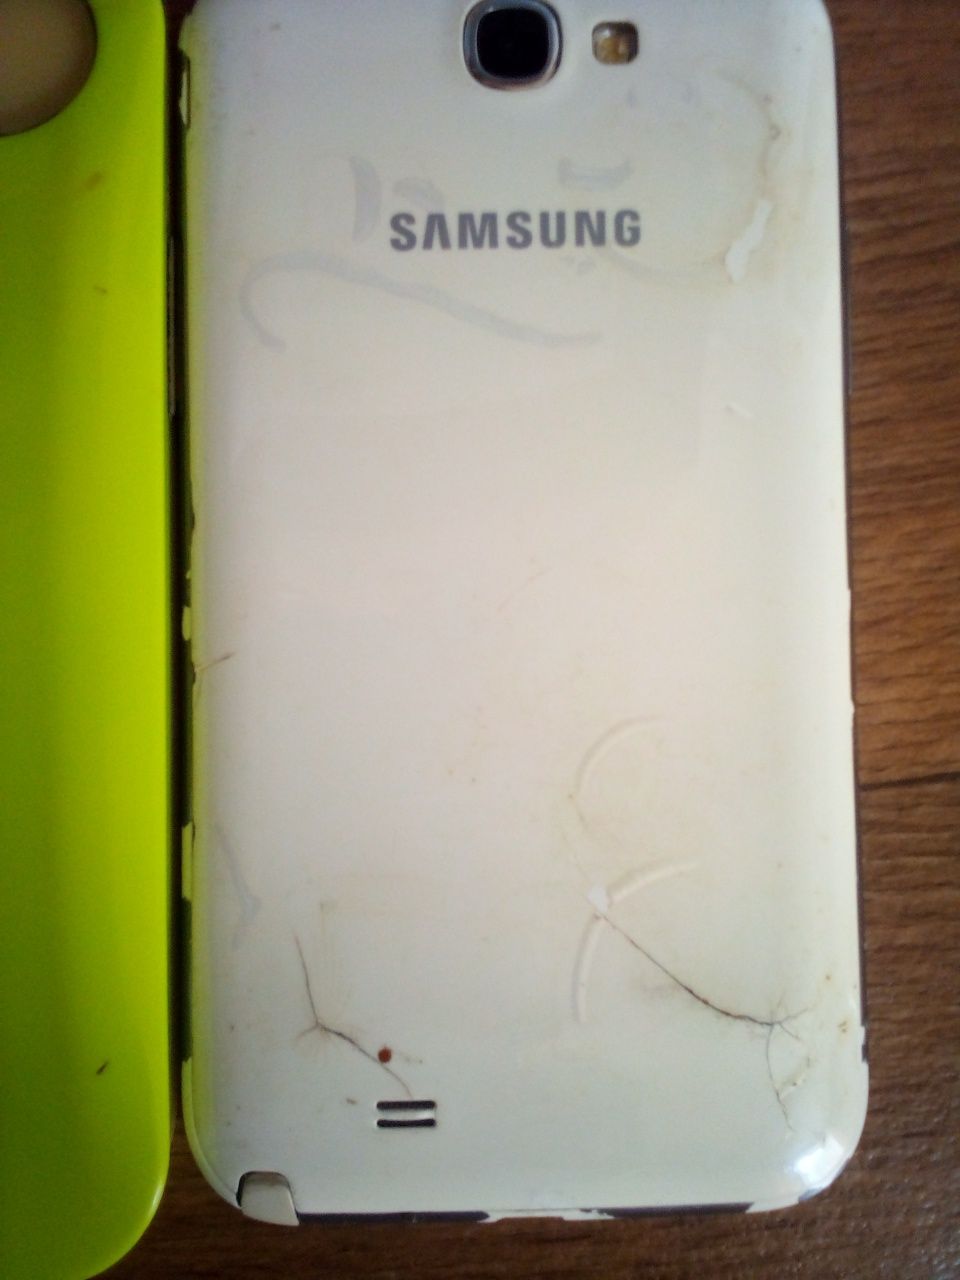 Samsung GT-N7100